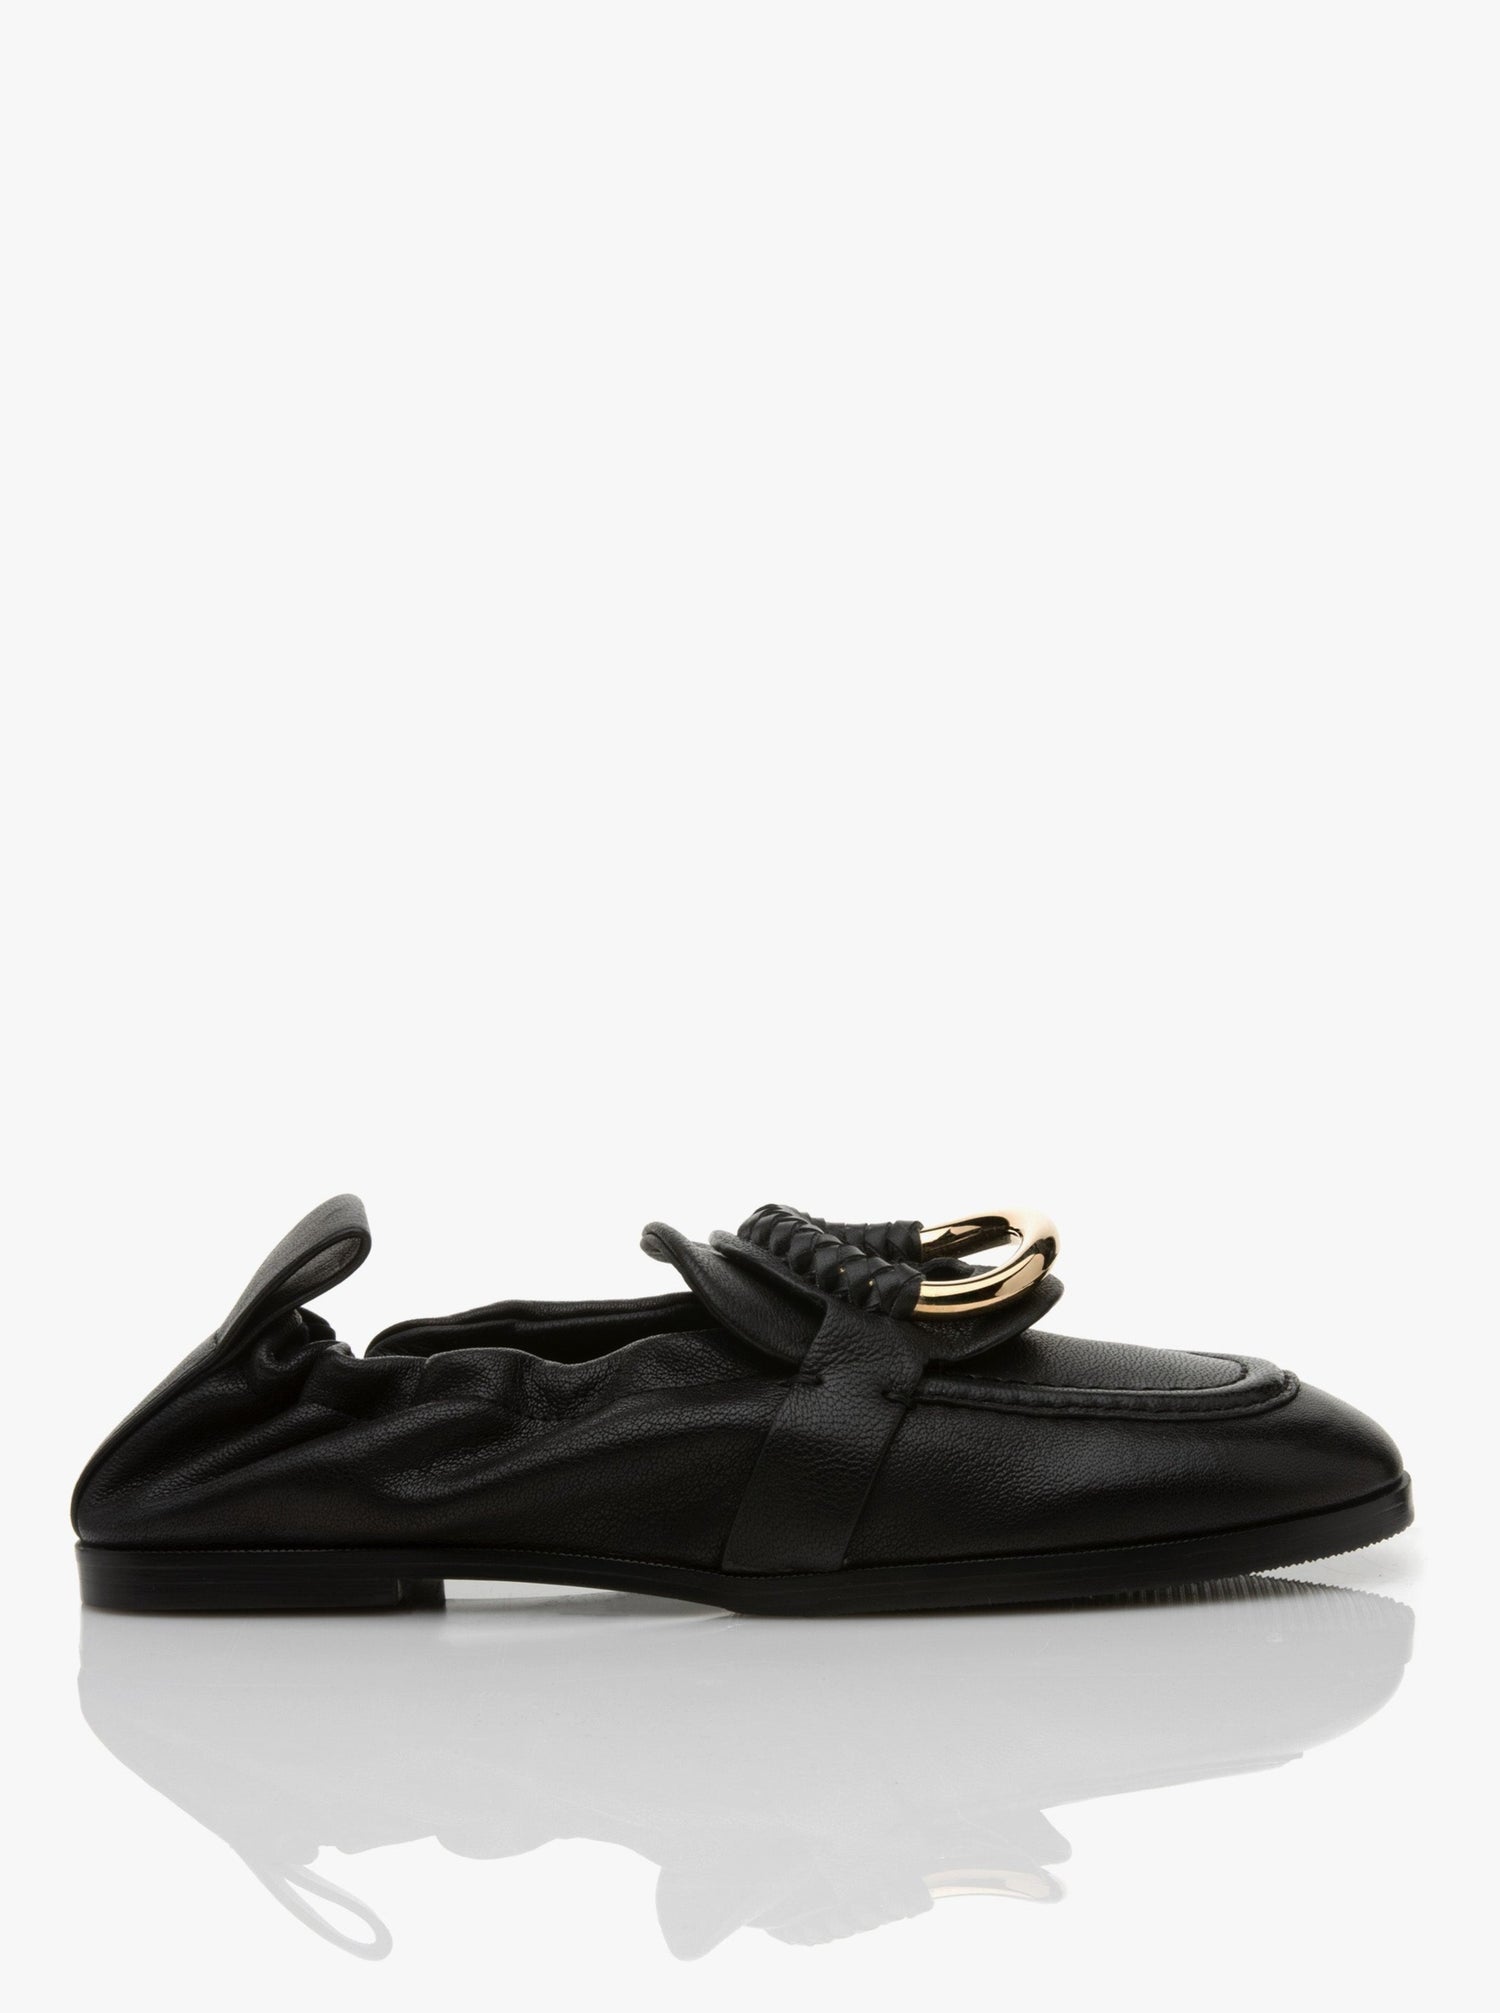 Hana loafers, black